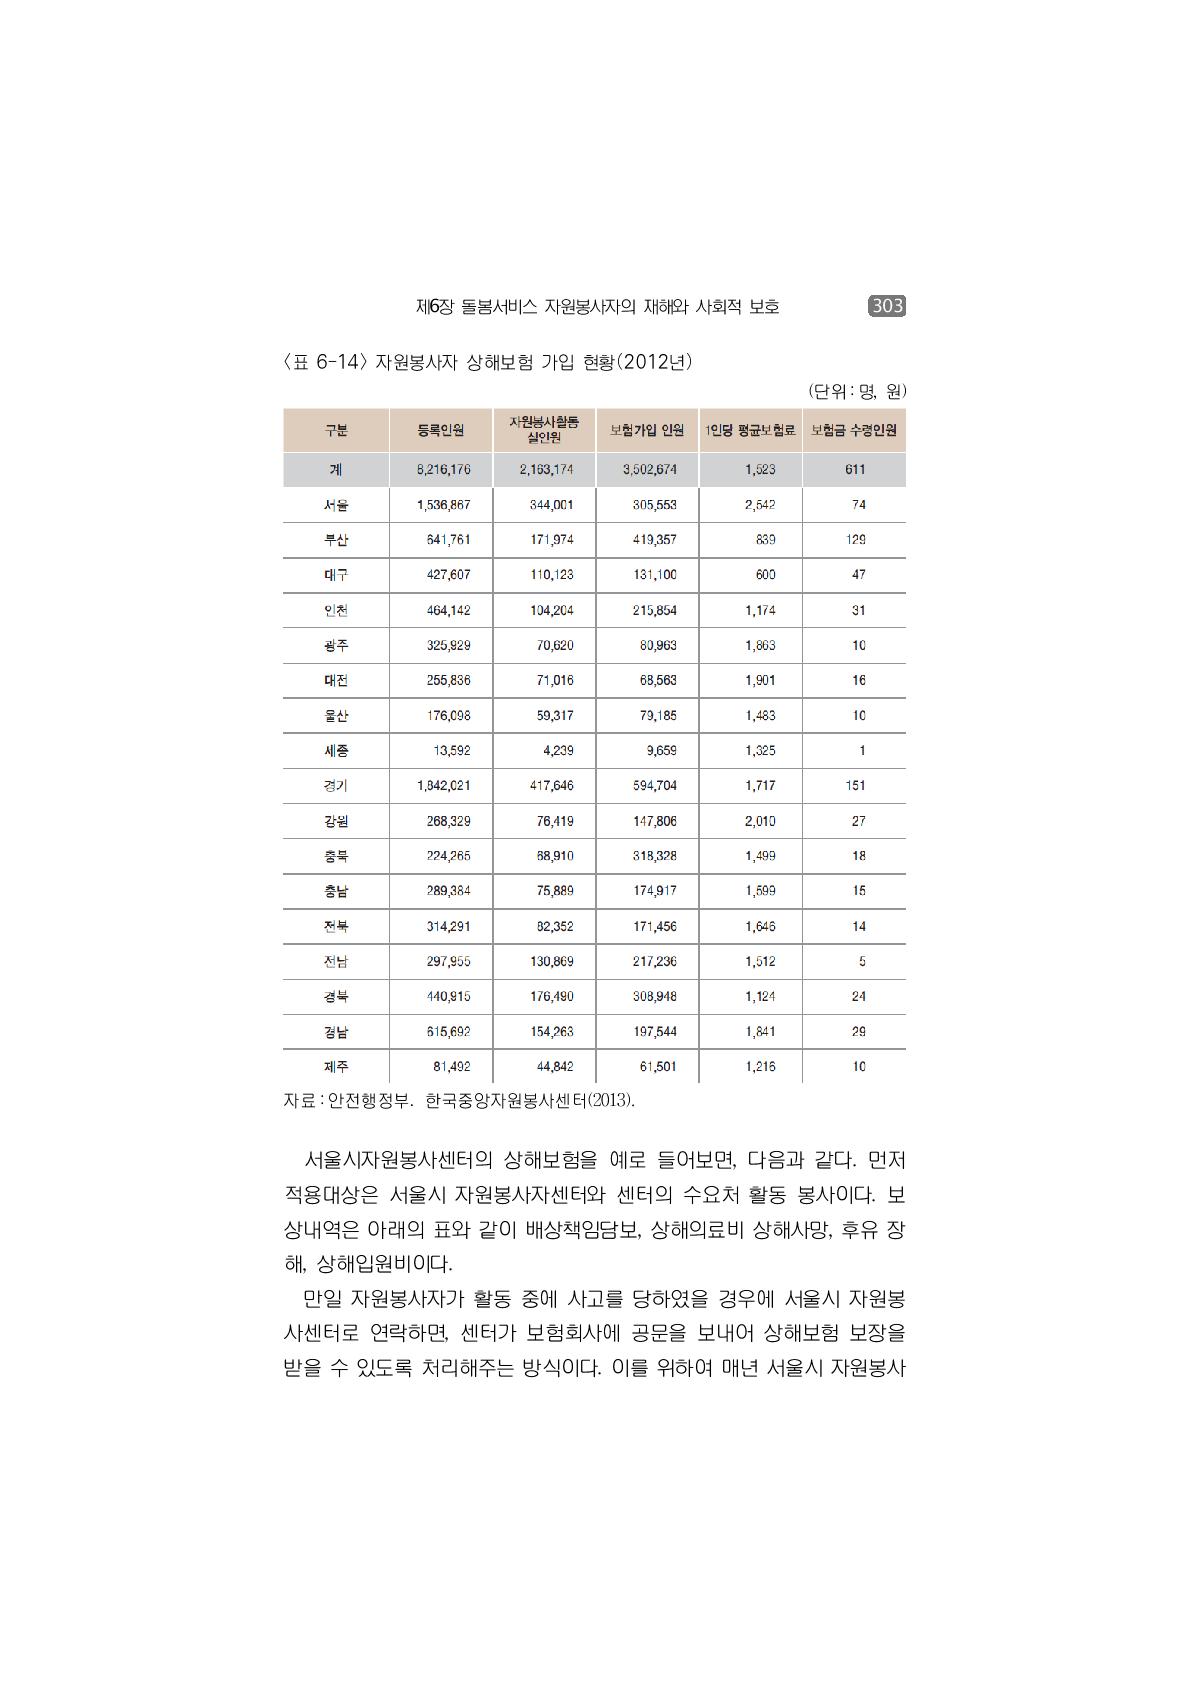 자원봉사자 상해보험 가입 현황(2012년)(단위:명, 원)